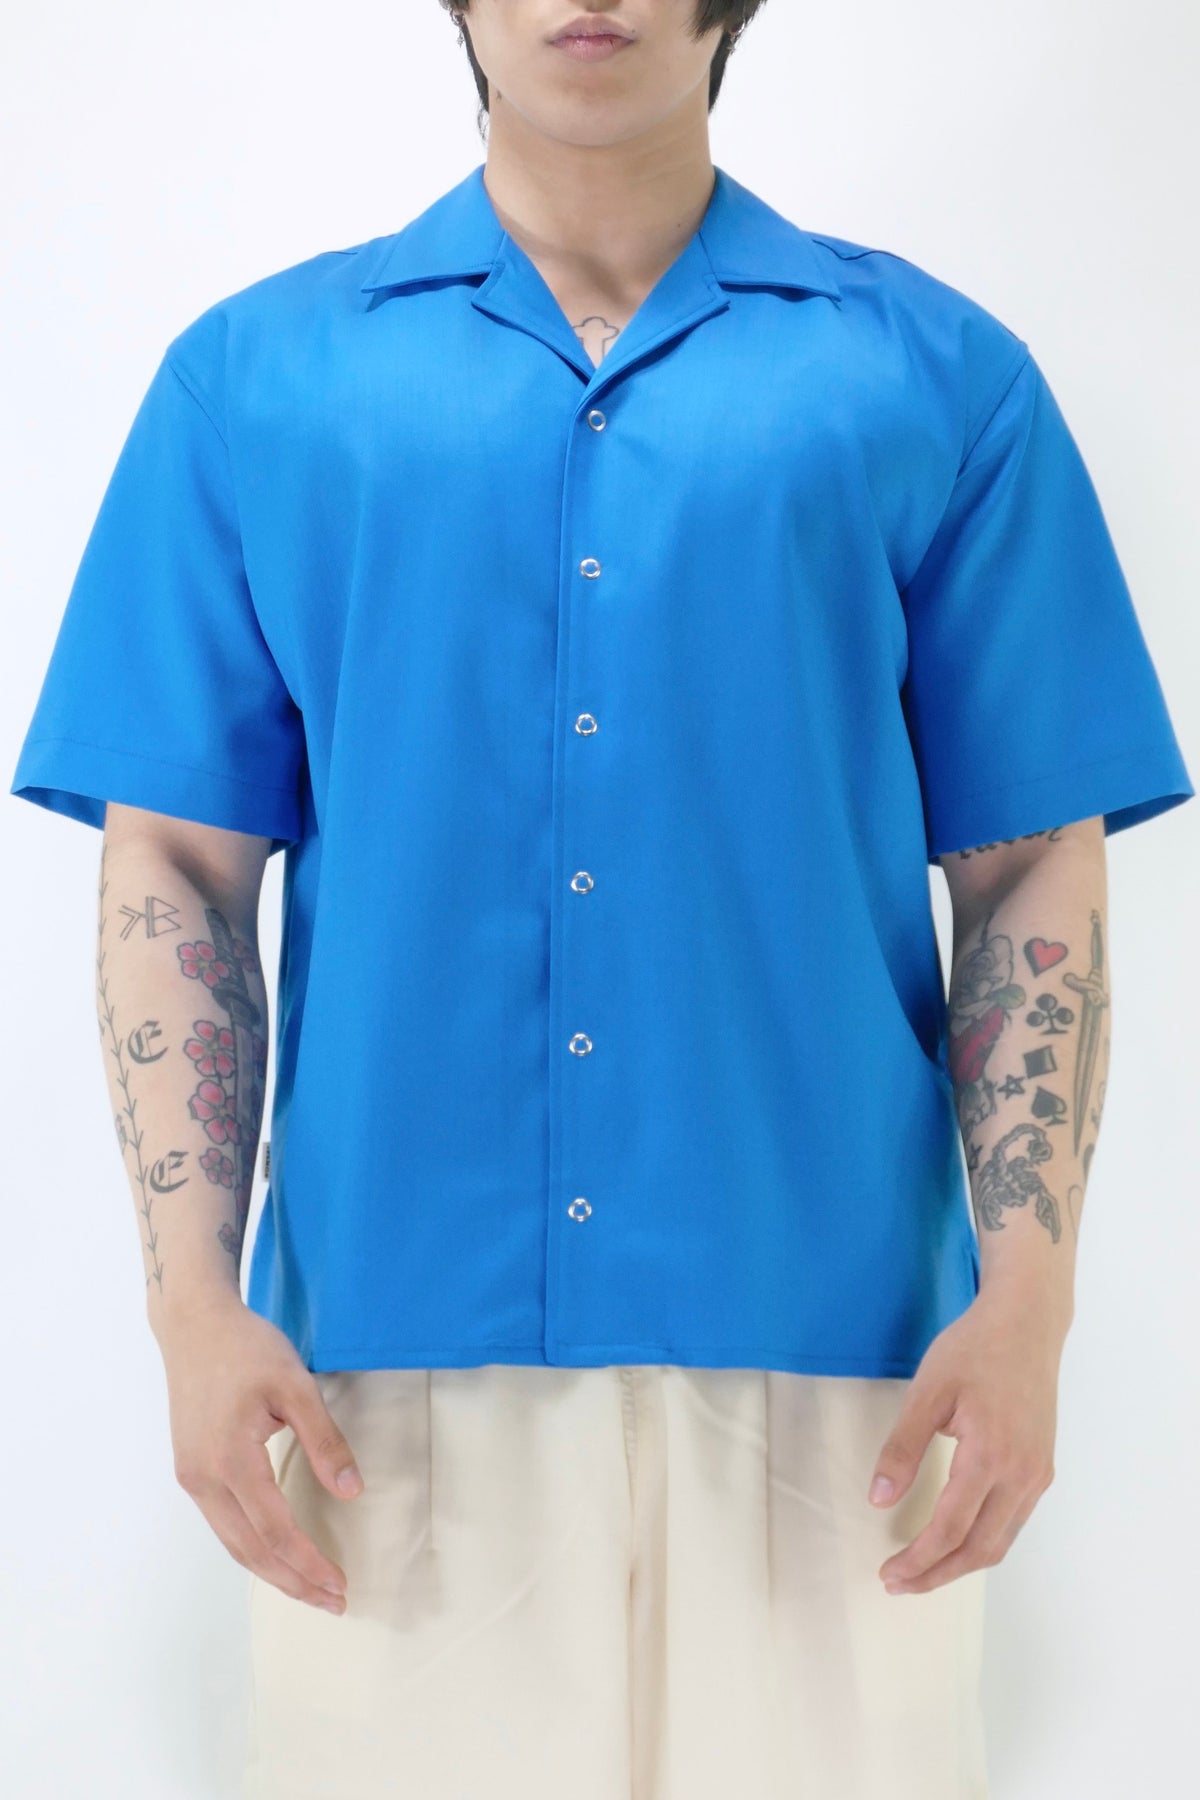 Bonsai Bowling Shirt - Azure